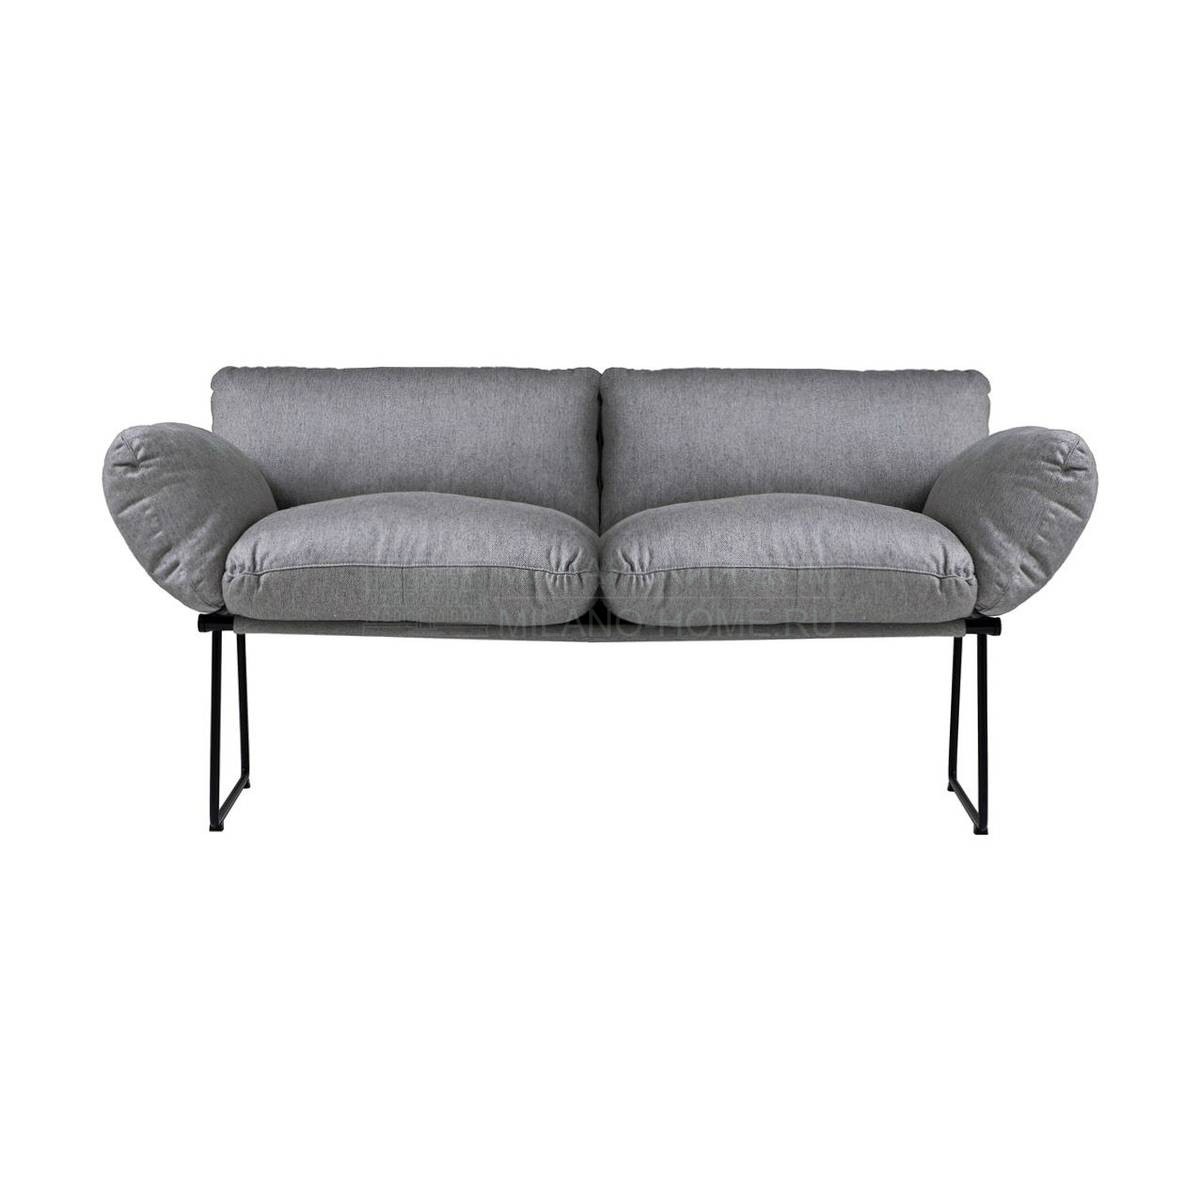 Прямой диван Elisa sofa из Италии фабрики DRIADE